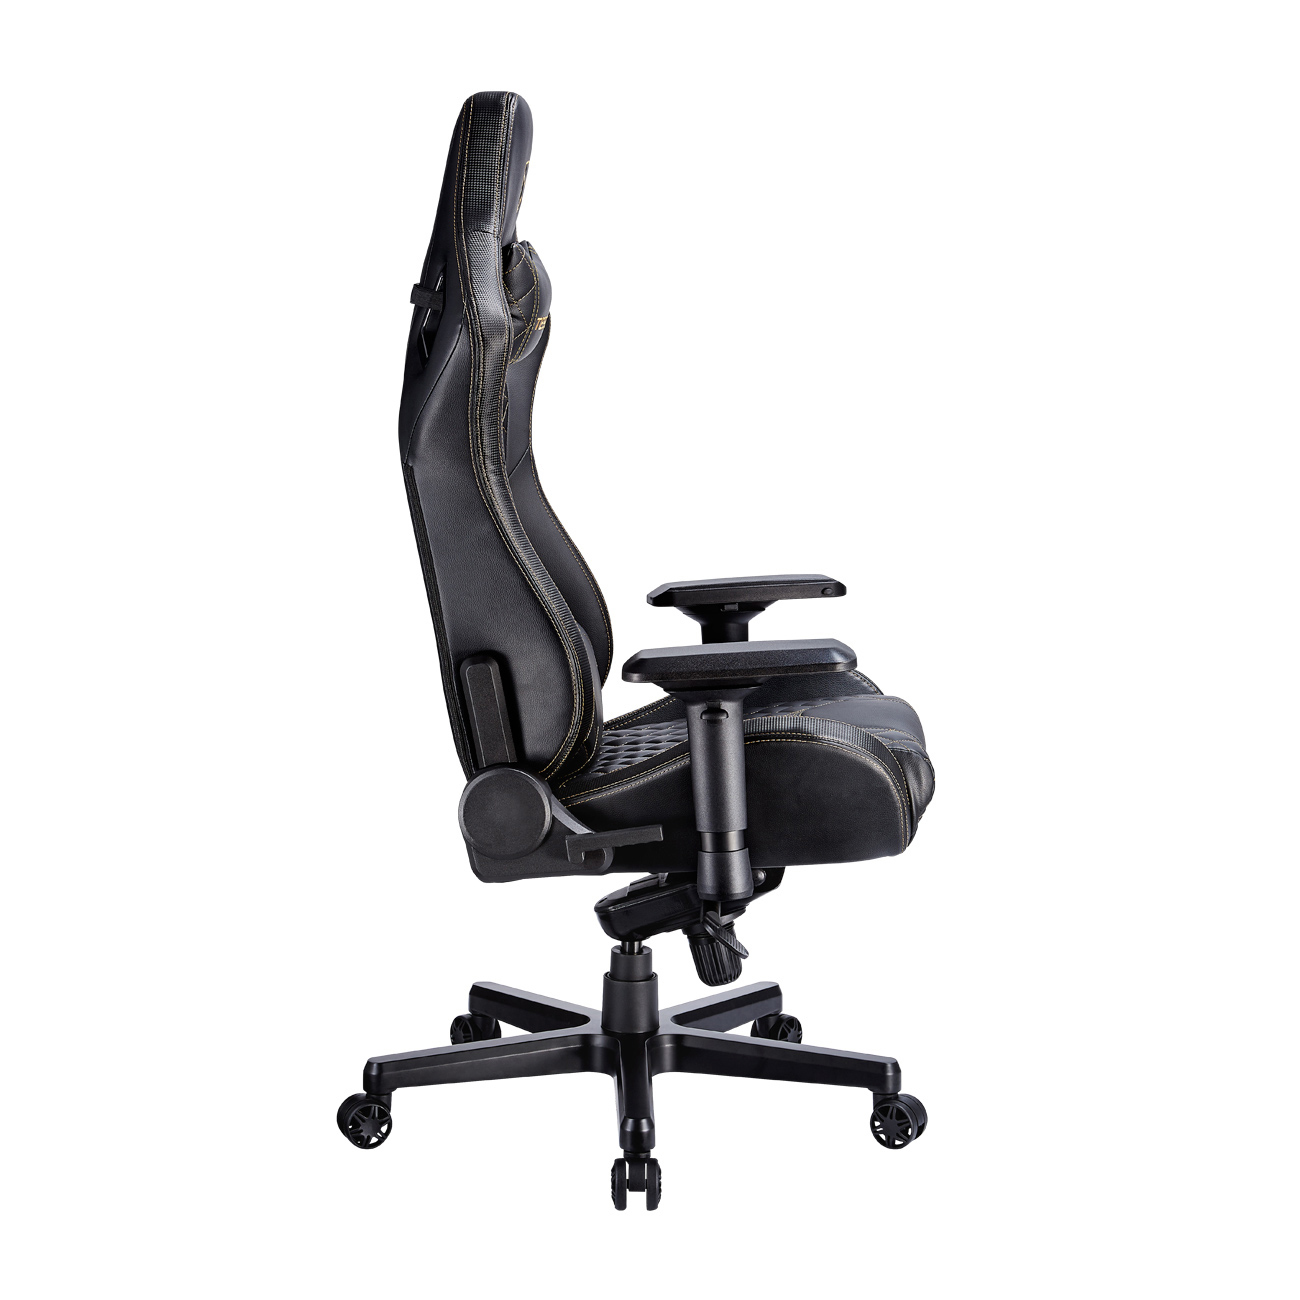 Schwarz/Gold X Zone TESORO Chair Gaming Stuhl, Gaming